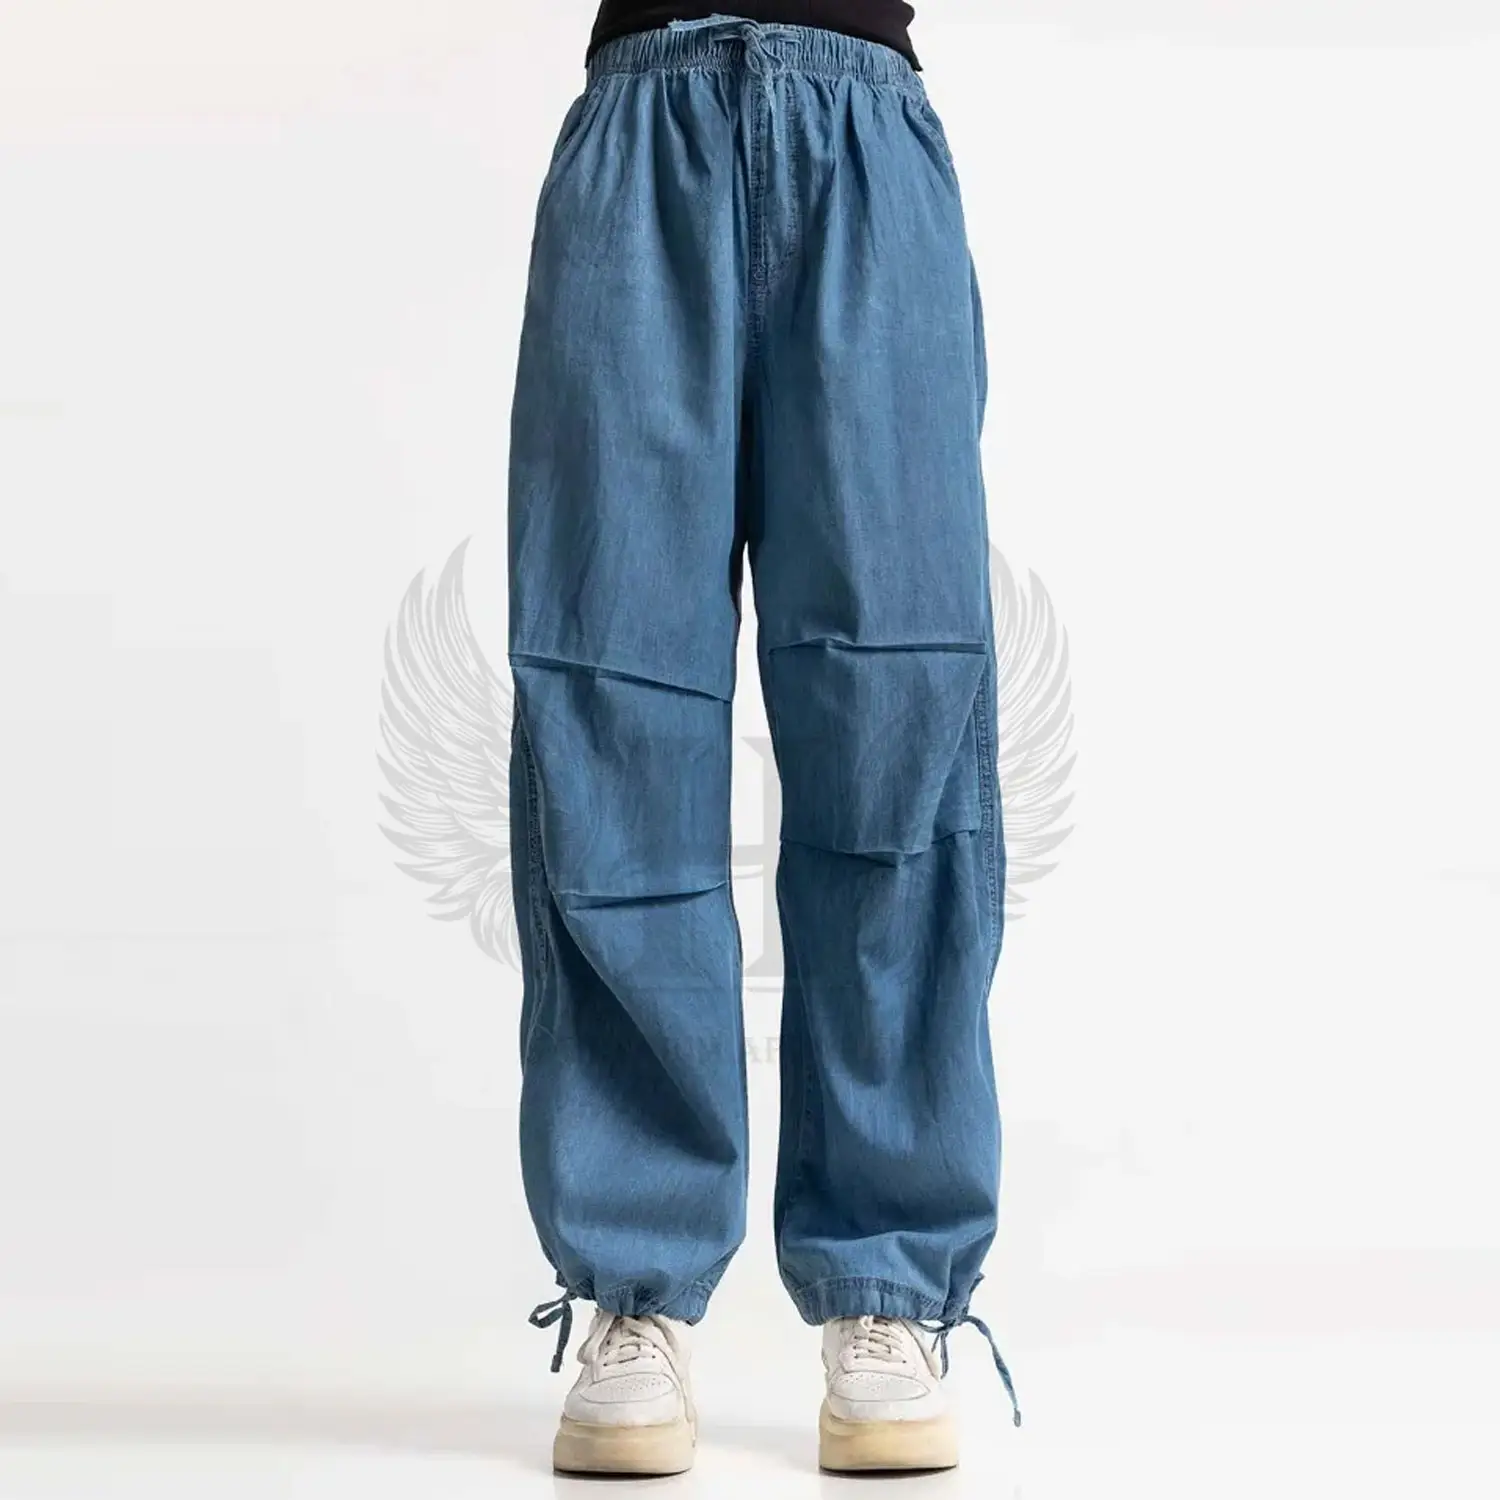 Jeans Jeans in Denim Basic Premium blu scuro-opzioni di colore personalizzate-fornitore all'ingrosso all'ingrosso